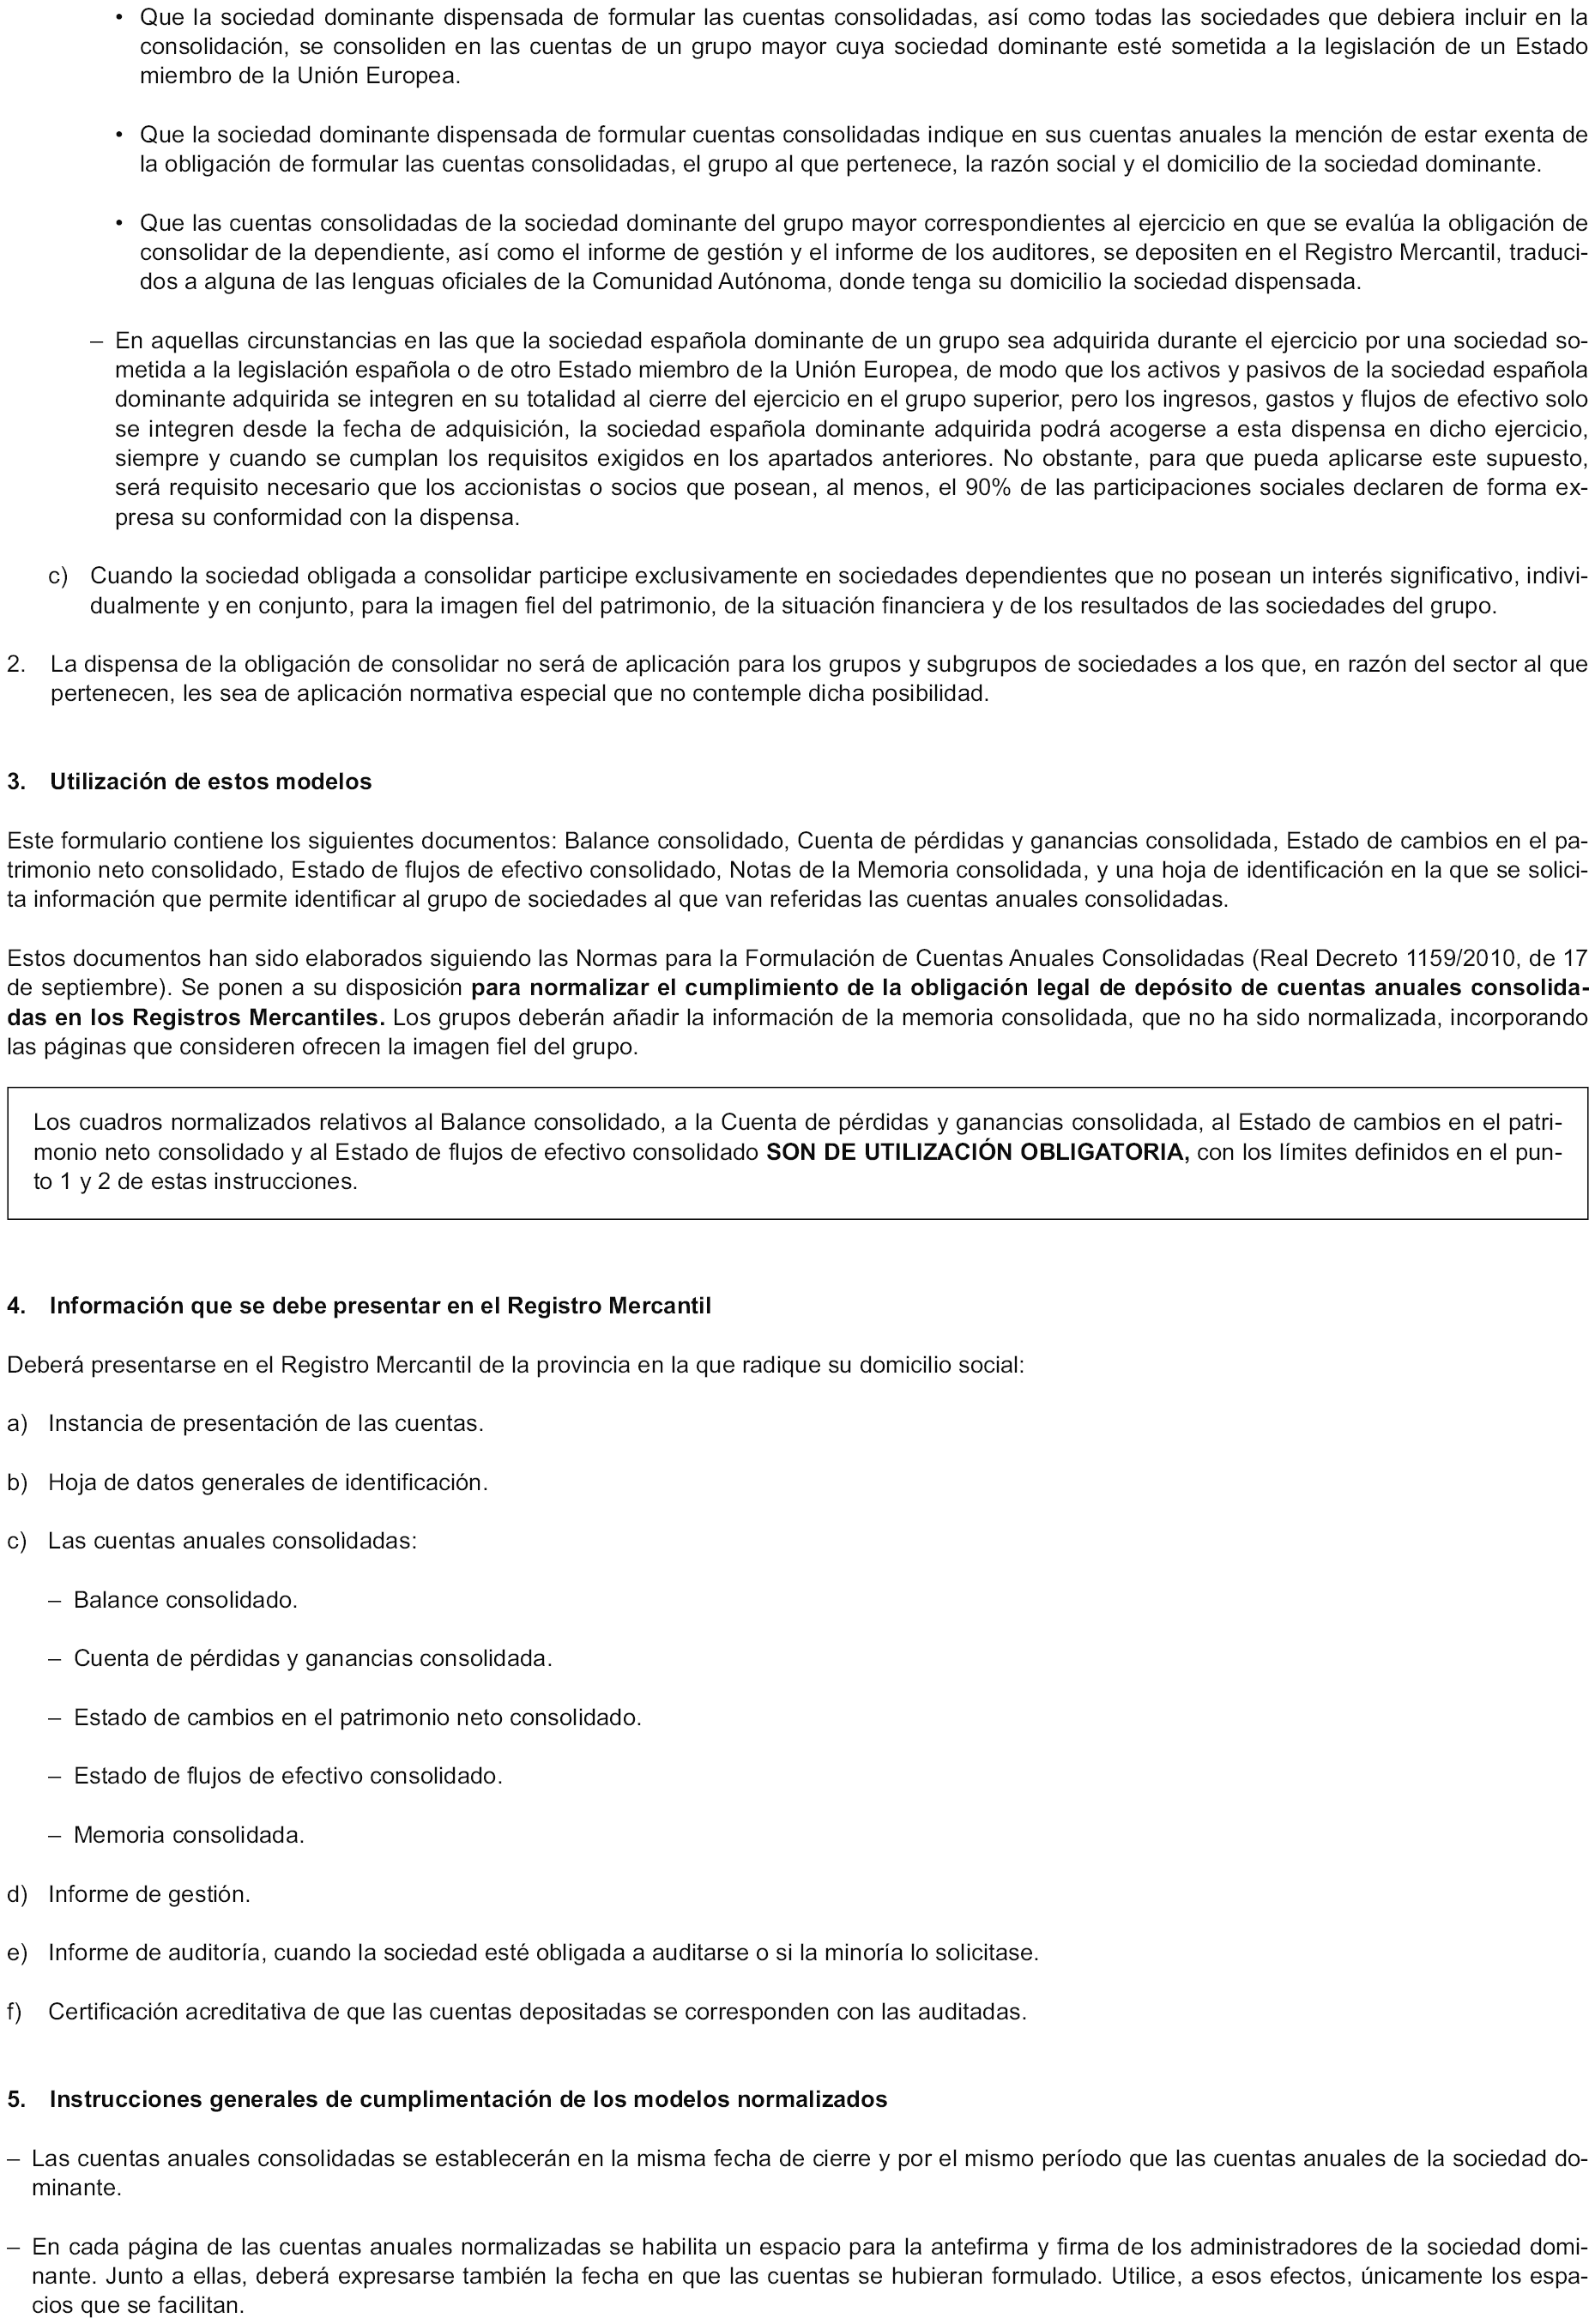 BOE.es - BOE-A-2011-10675 Orden JUS/1698/2011, de 13 de junio, por la que  se aprueba el modelo para la presentación en el Registro Mercantil de las cuentas  anuales consolidadas.